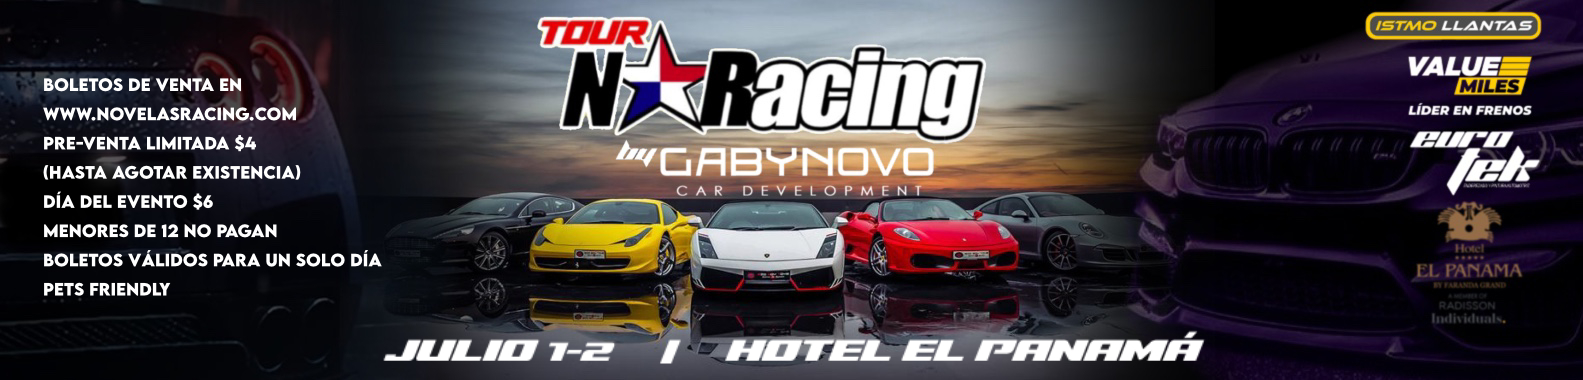 Tour Novelas Racing